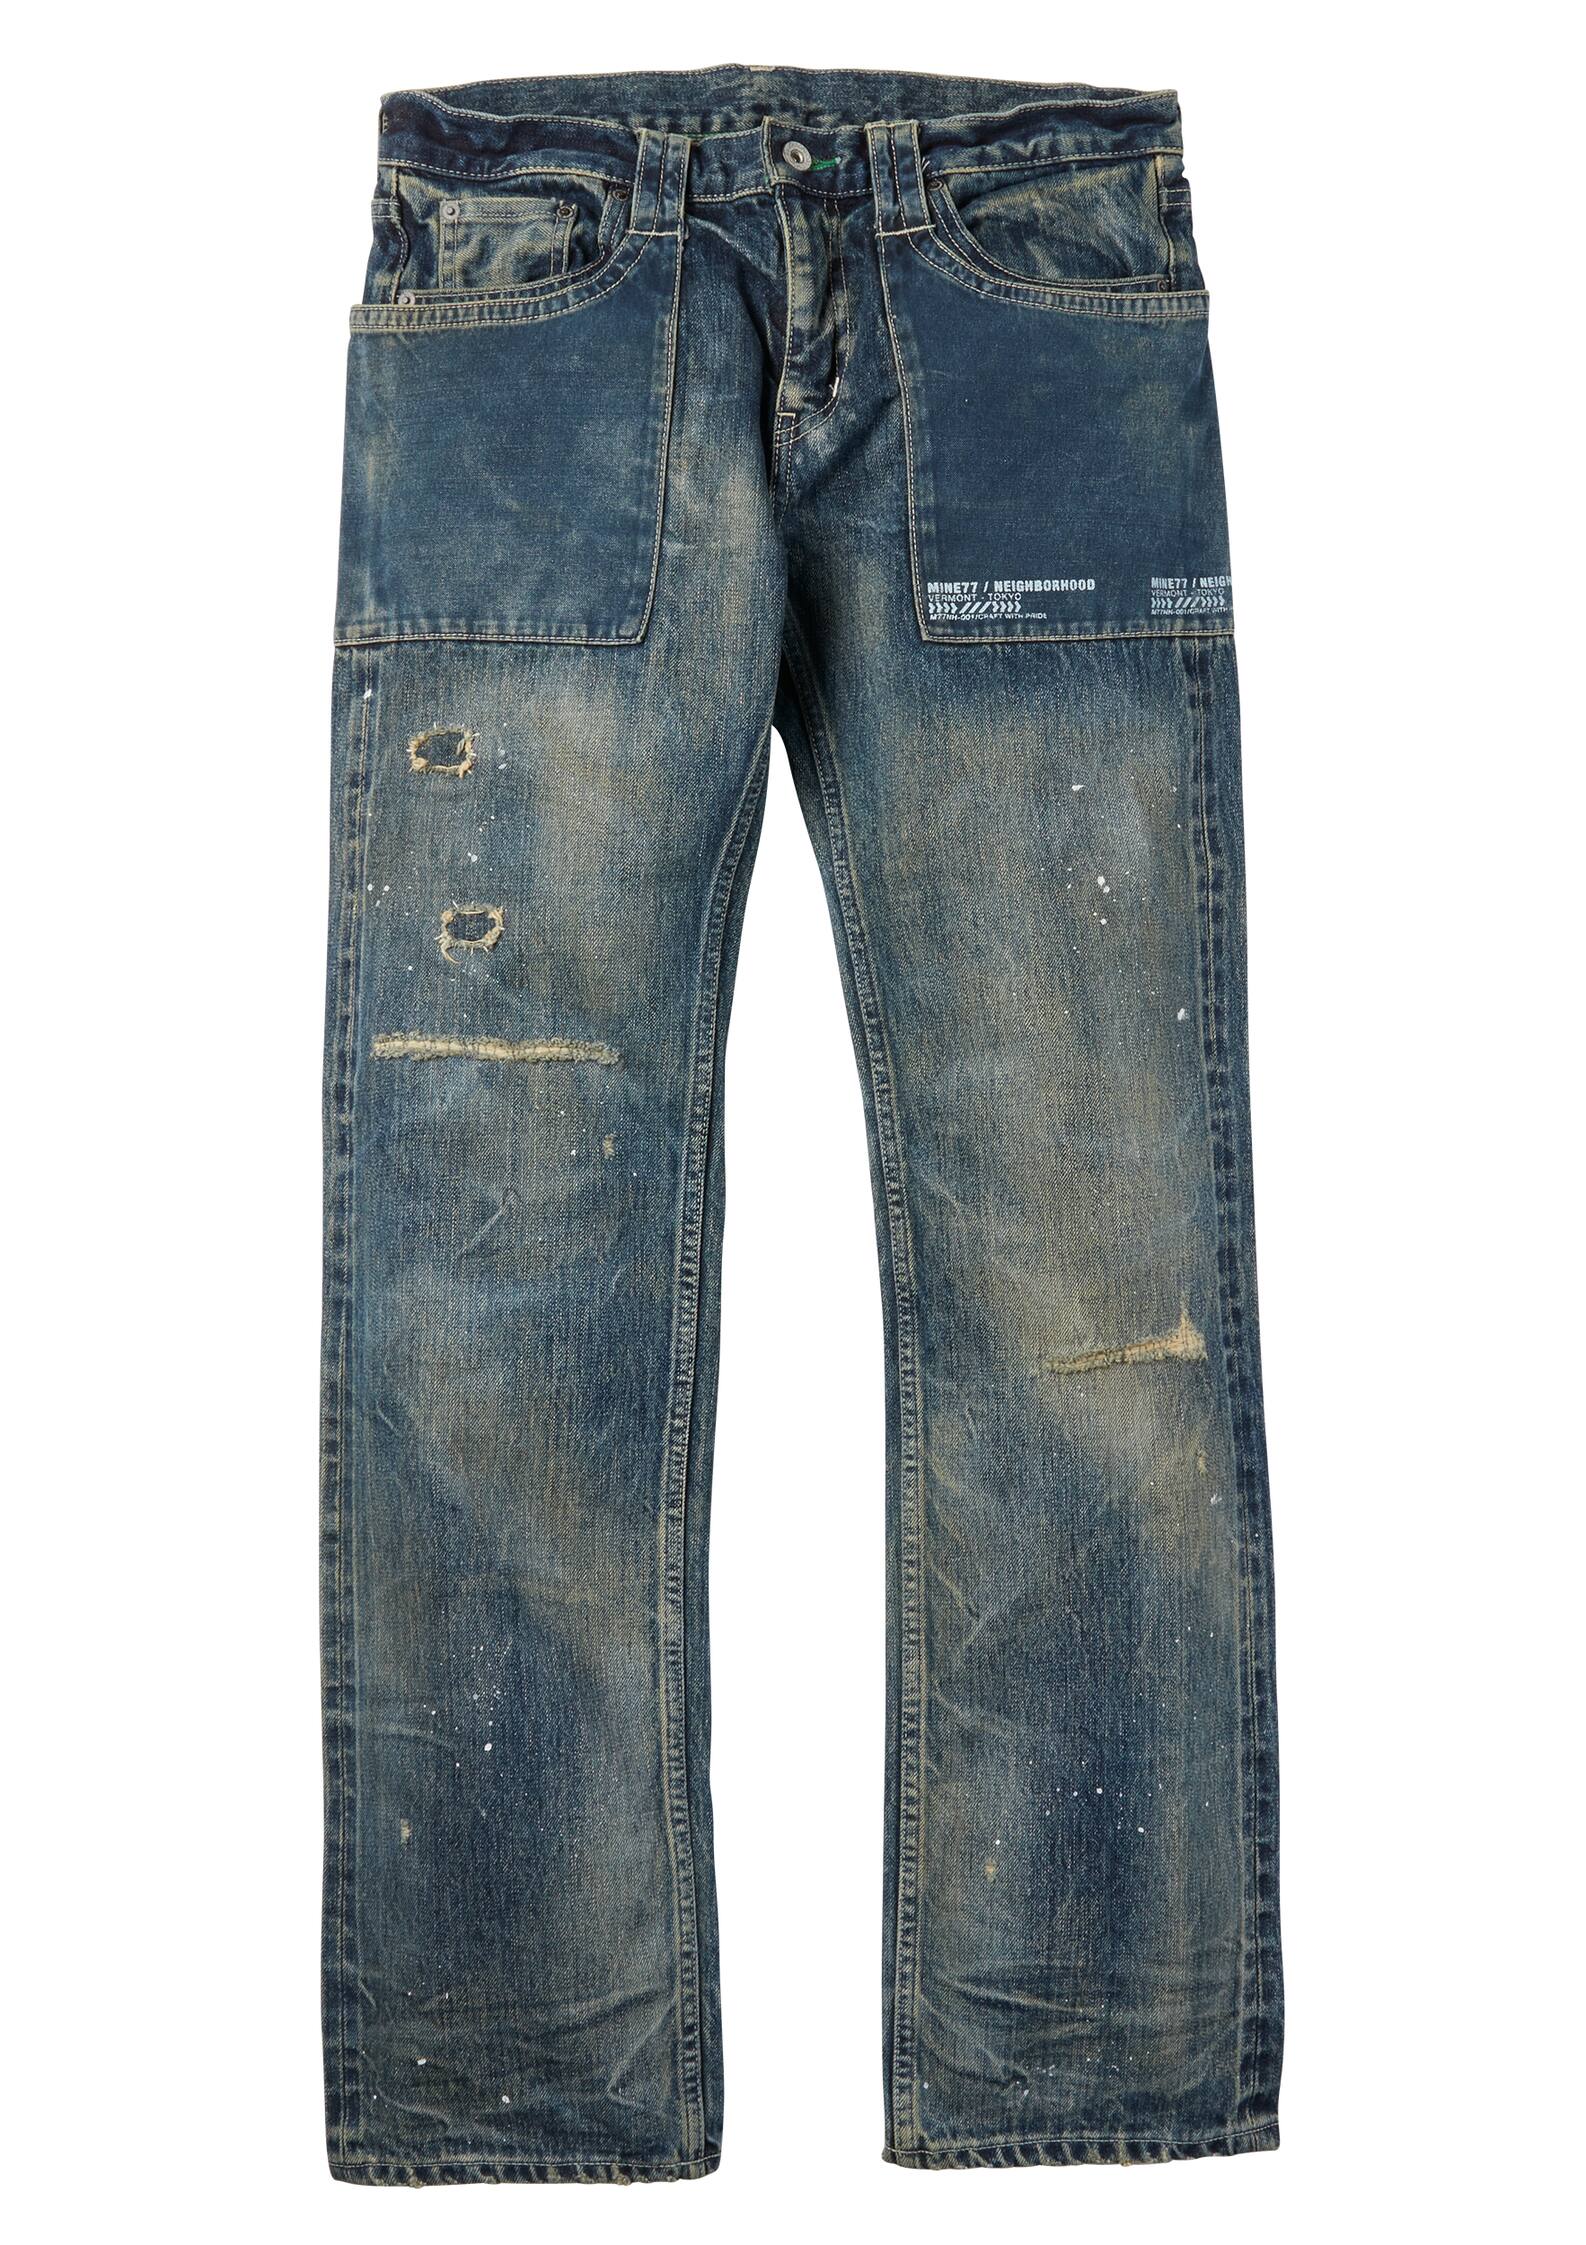 MINE77 x NEIGHBORHOOD Selvedge Jeans